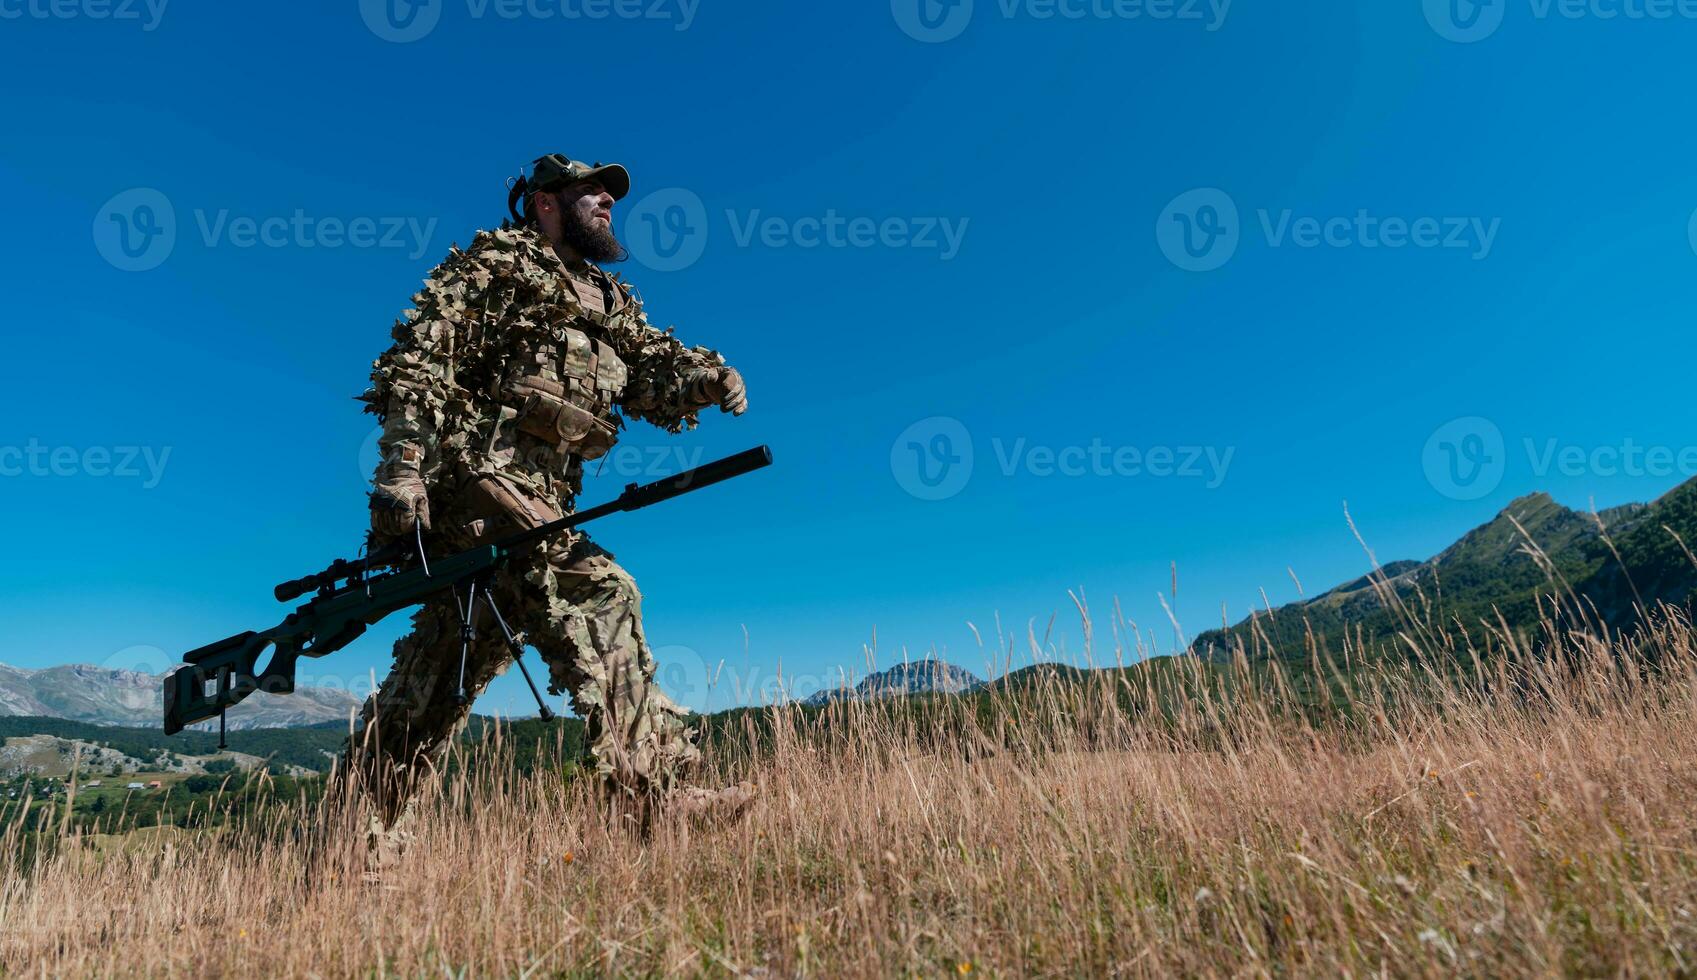 Ejército soldado participación un francotirador rifle con alcance y caminando en el bosque. guerra, ejército, tecnología y personas concepto. foto